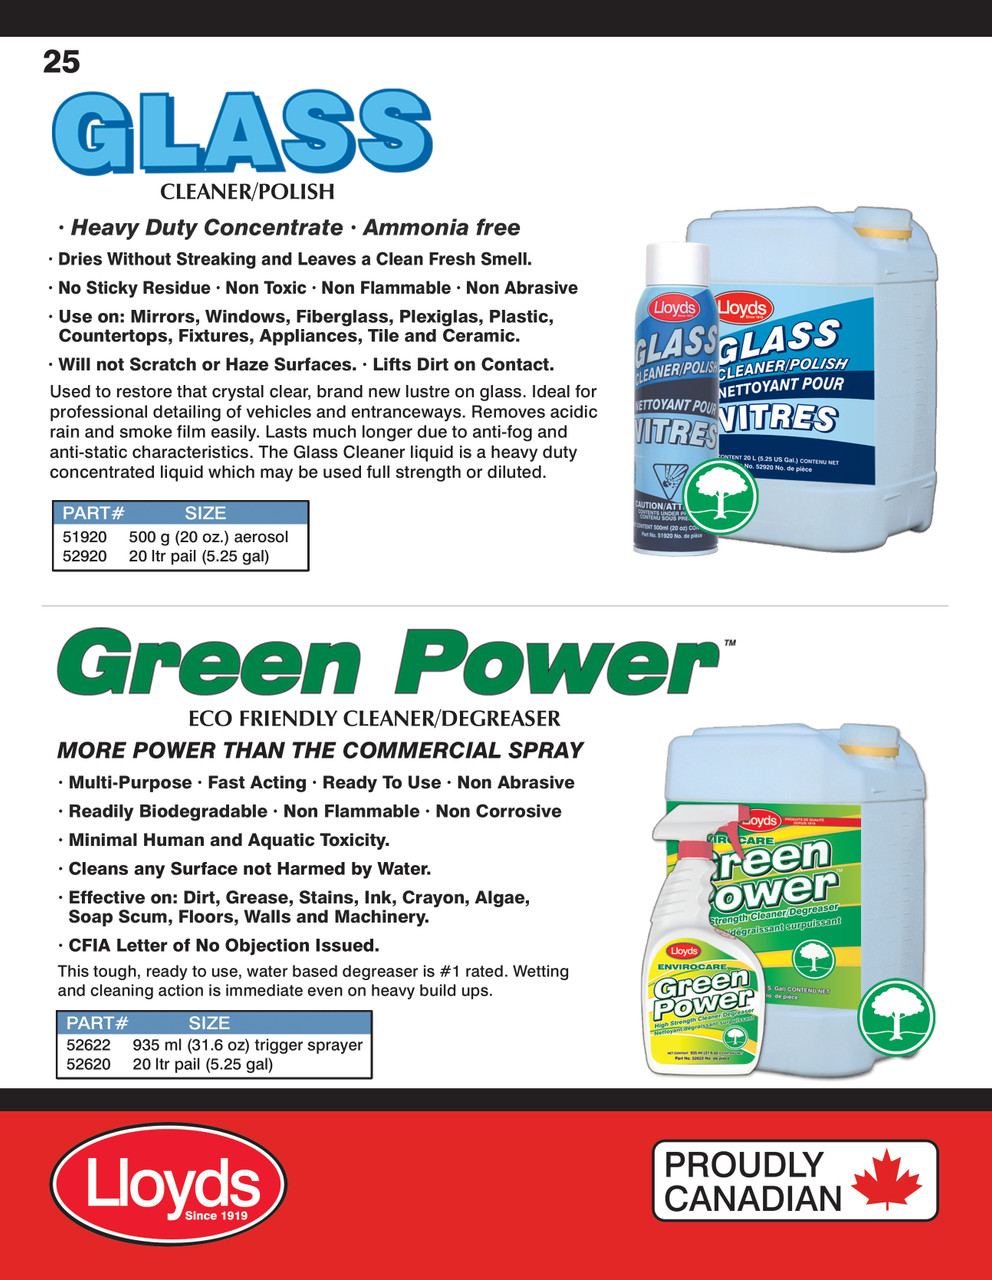 Green Power Bio-Degreaser 935ml Trigger Spray Bottle  52622